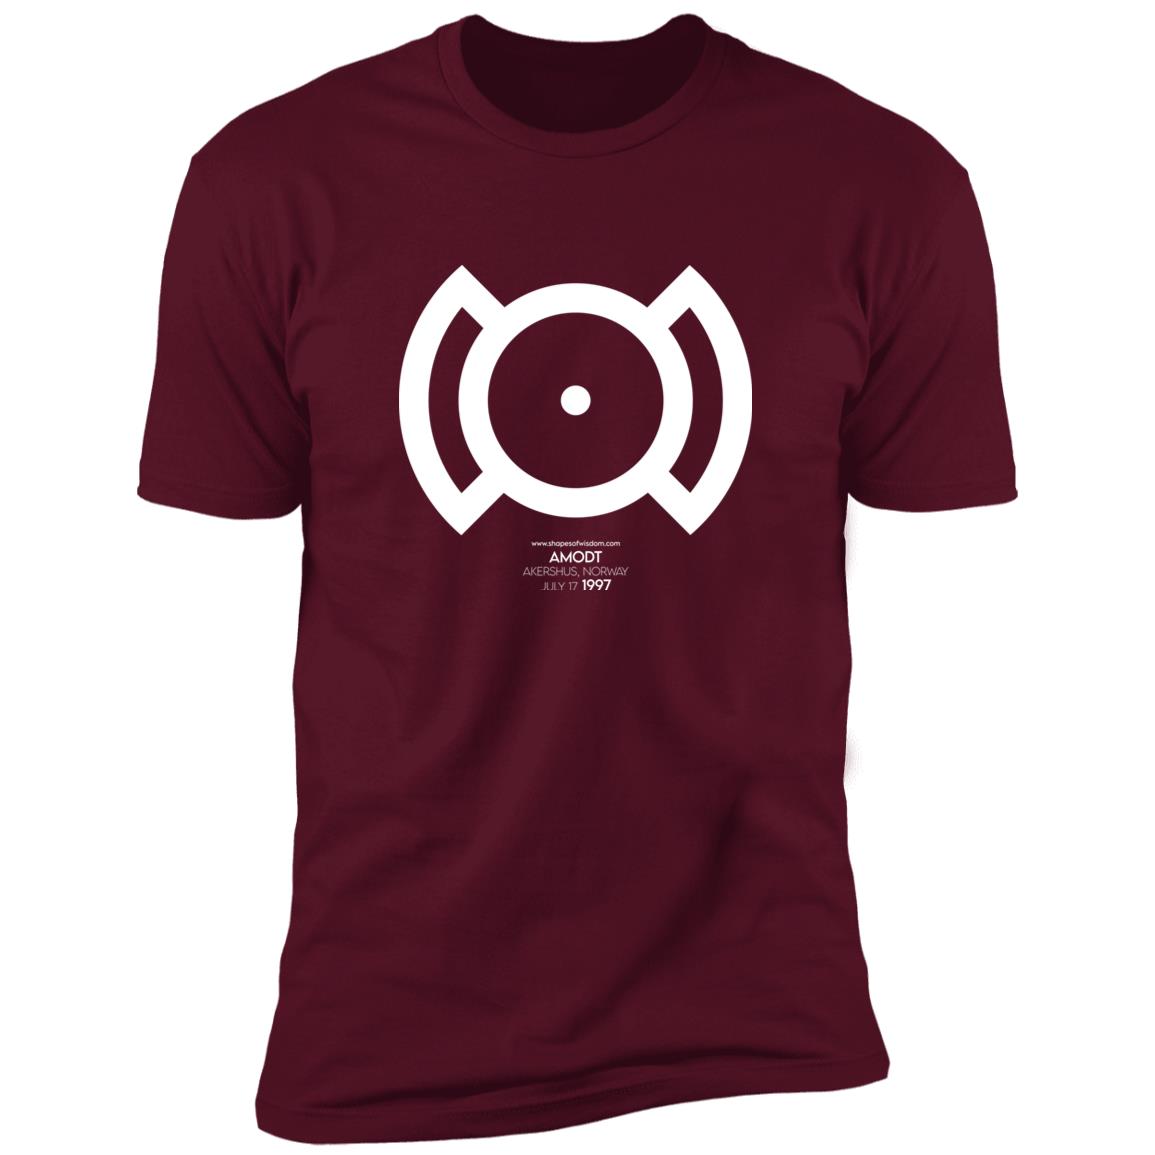 Crop Circle Premium T-Shirt - Amodt